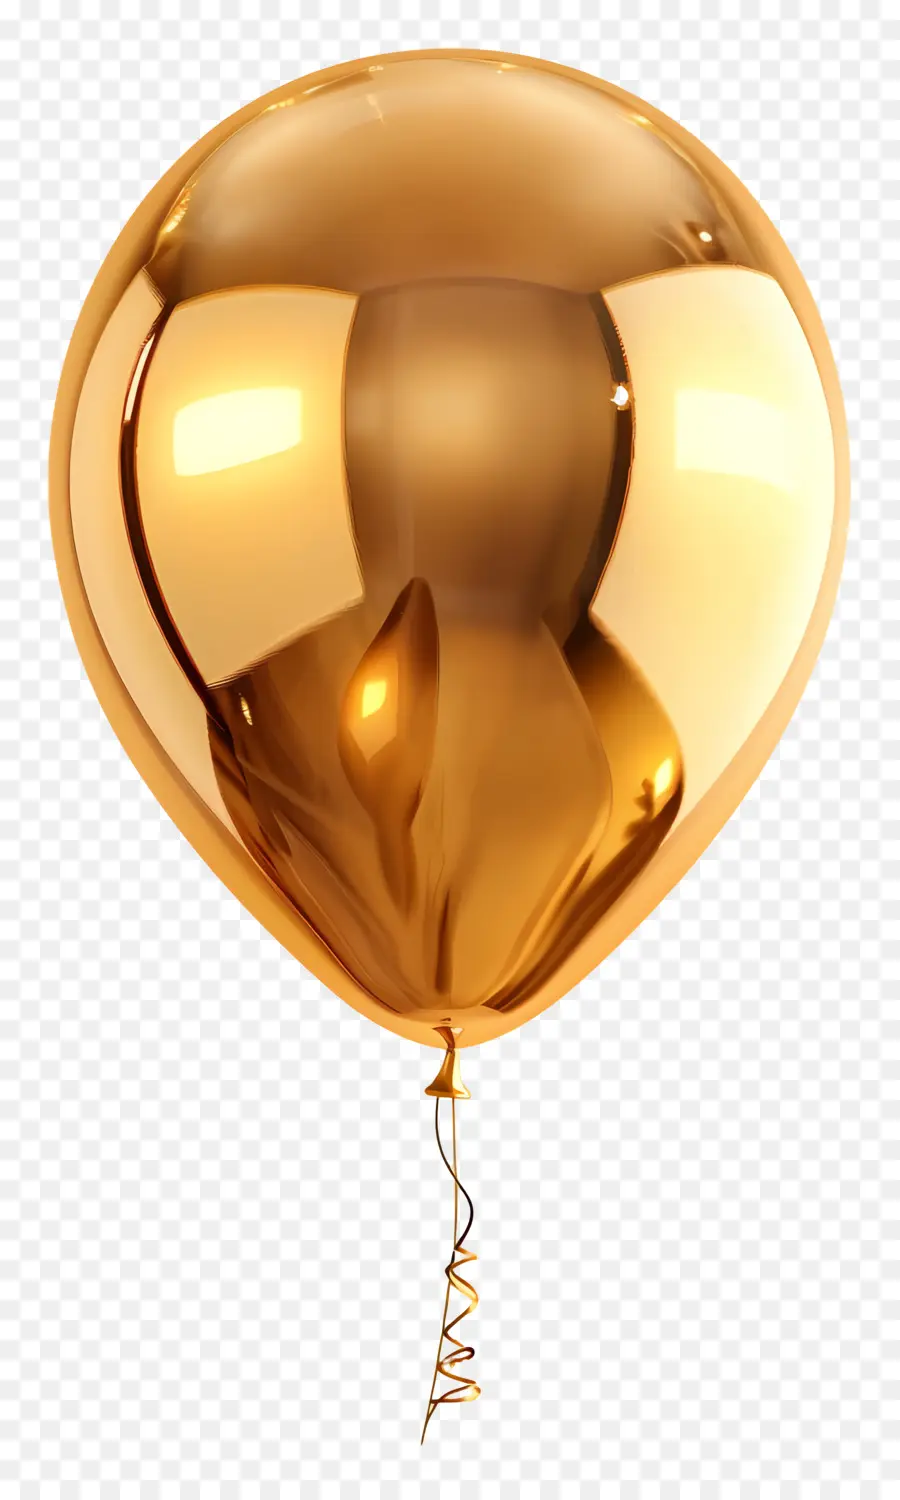 vàng bóng - Khinh khí cầu với ánh kim loại, bề mặt phản chiếu